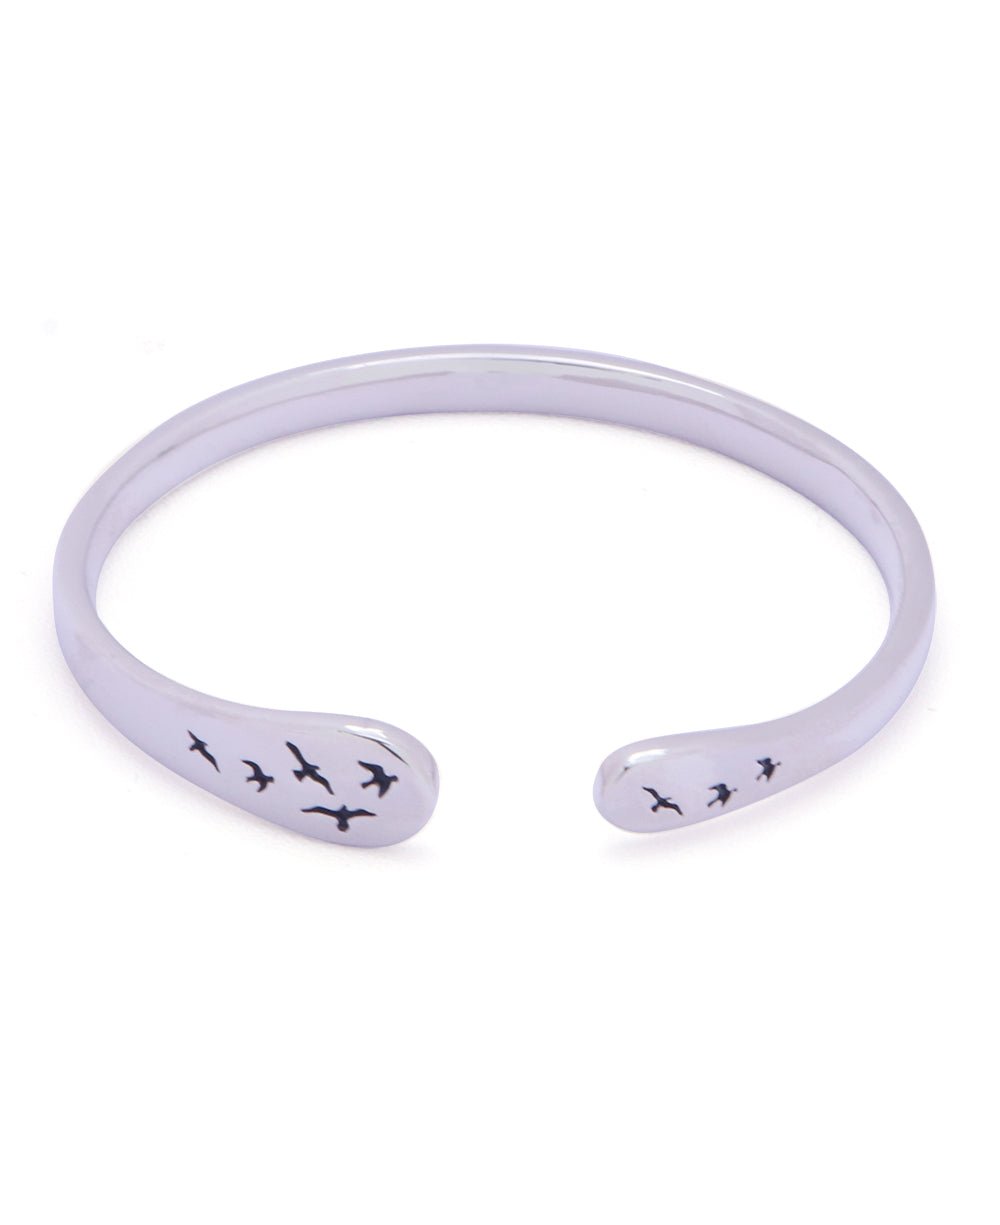 Let Go Sterling Silver Adjustable Mantra Bracelet - Bracelets